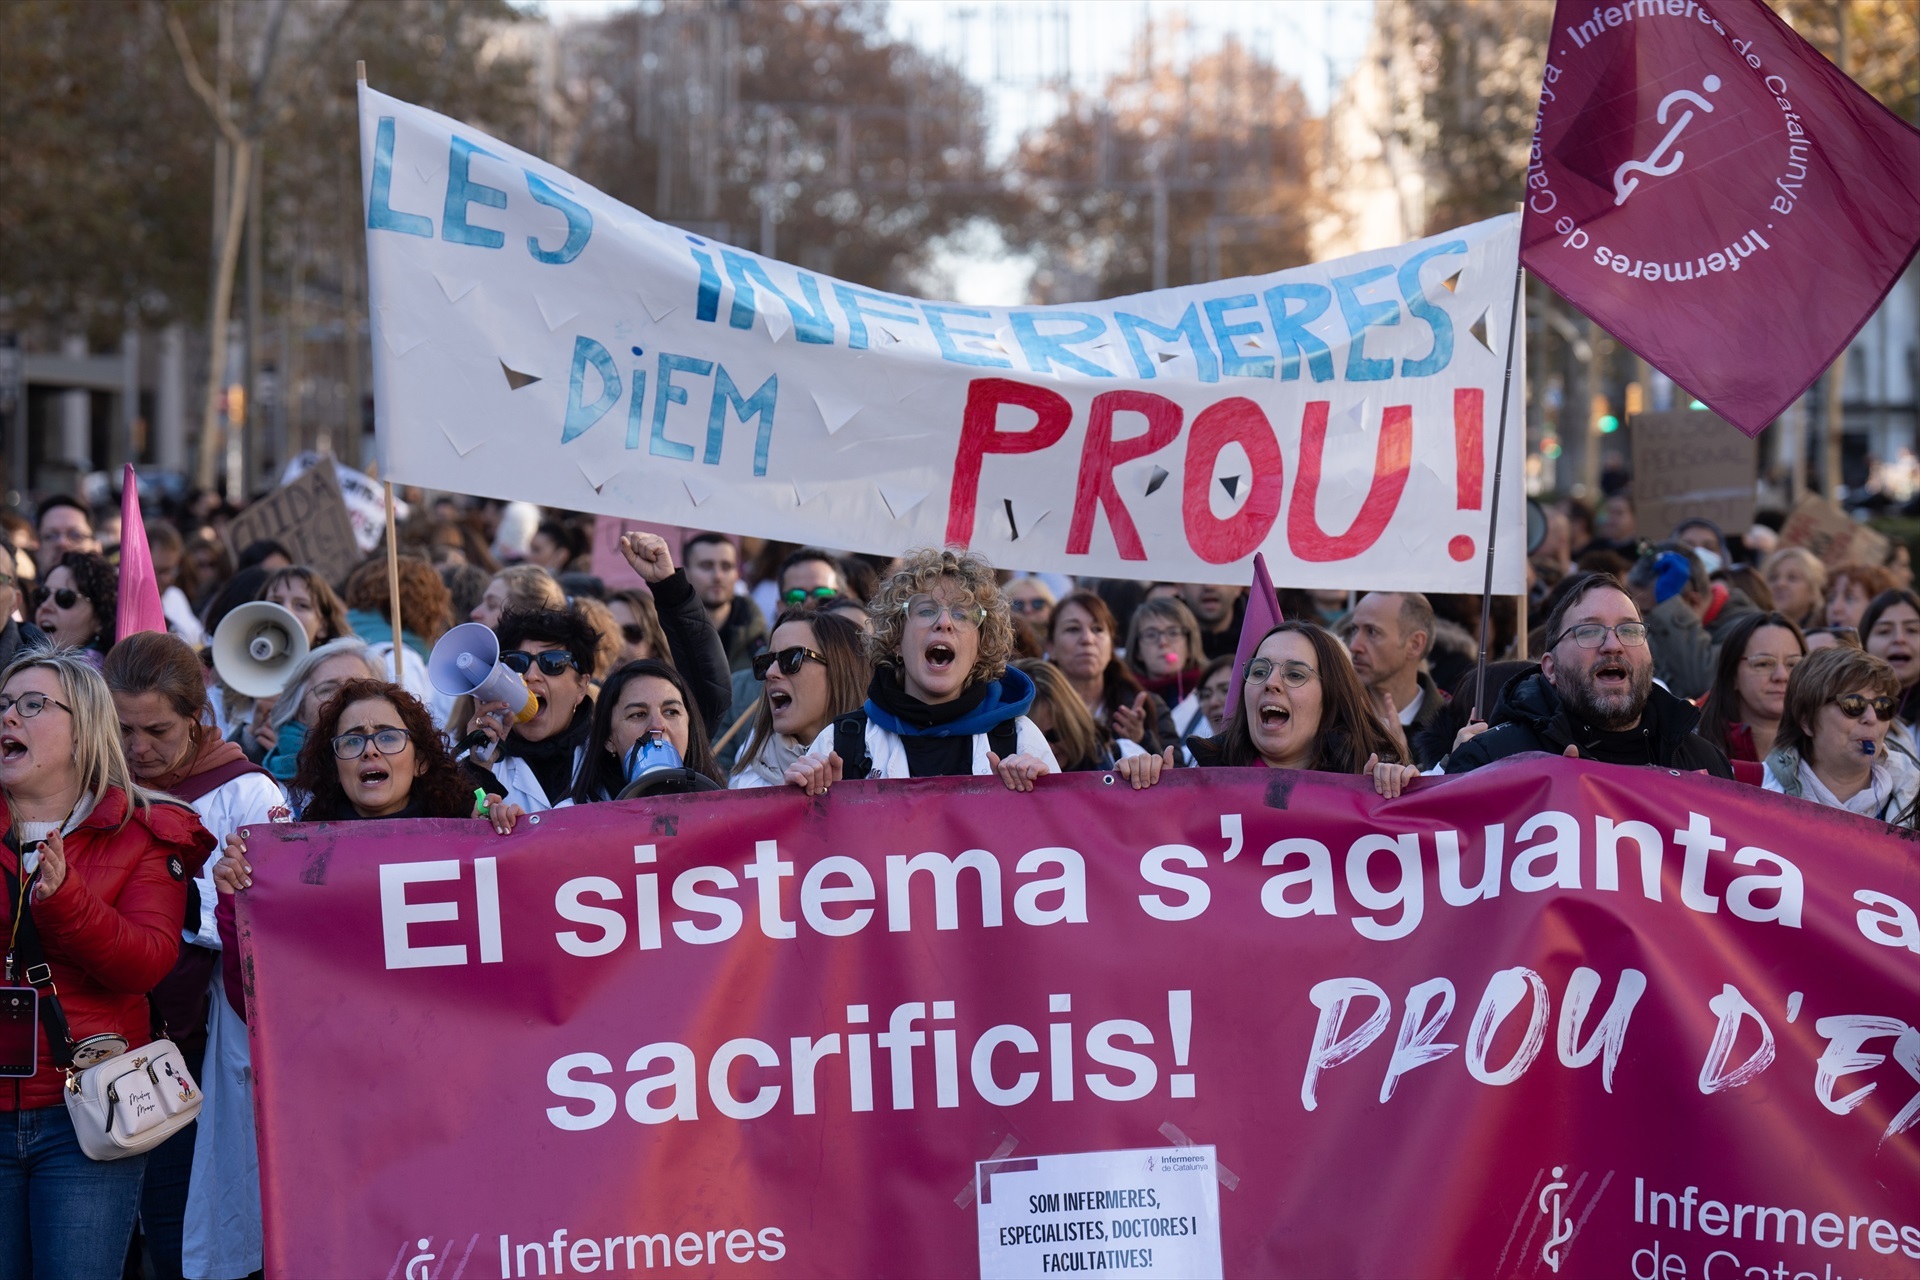 Les infermeres tornen a plantar cara al Govern amb una nova manifestació a Barcelona